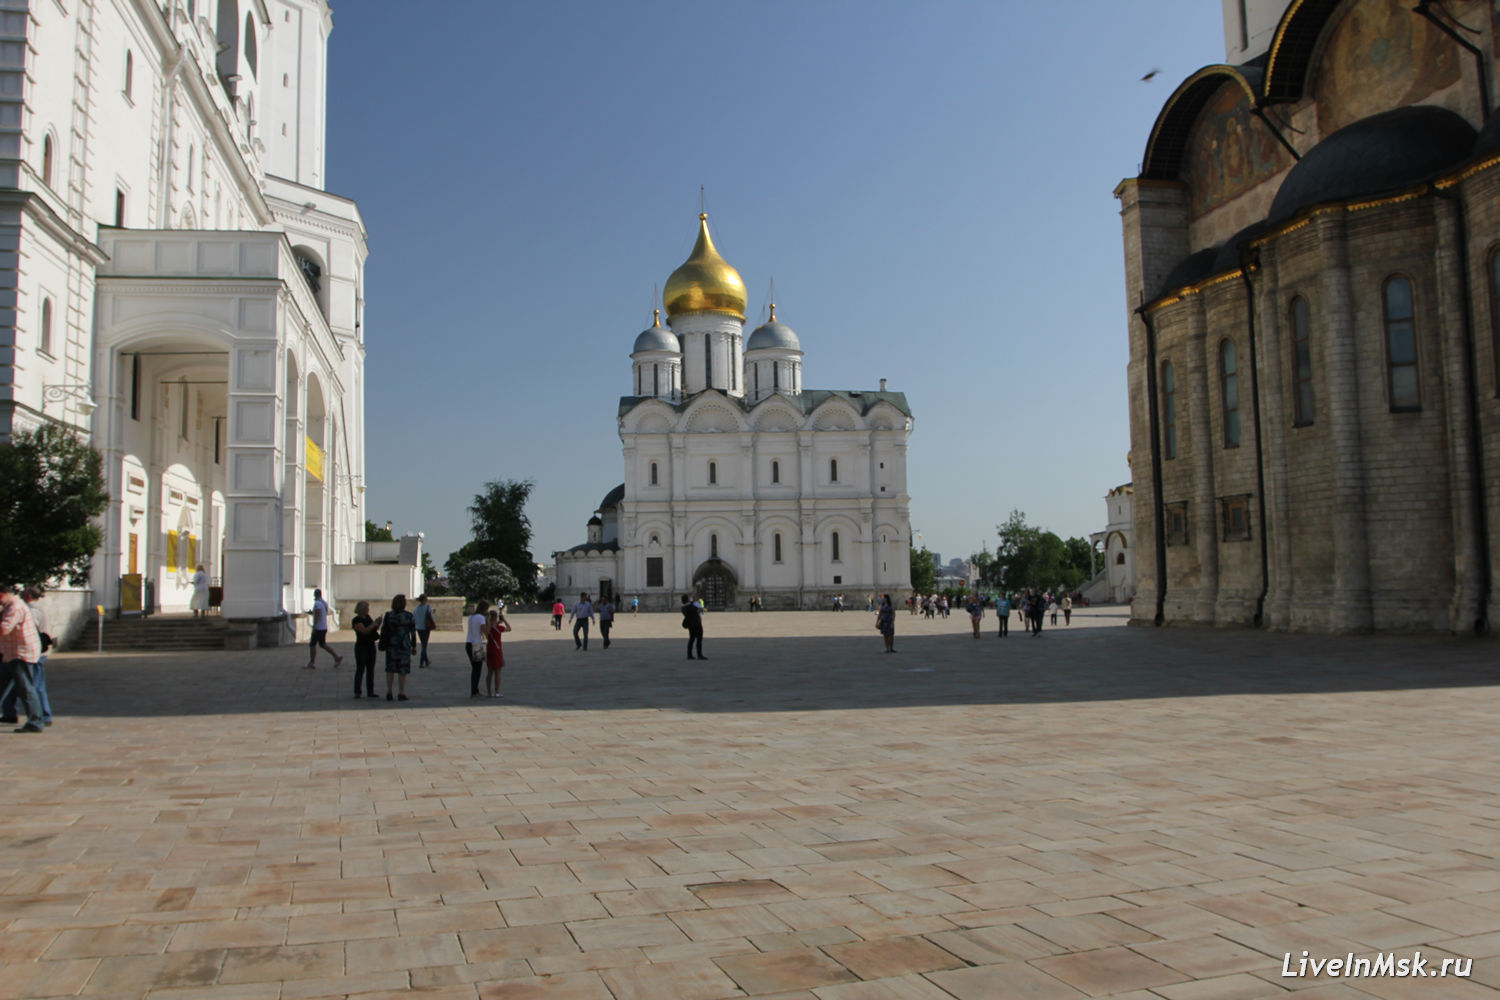 Соборная площадь Московского Кремля, фото 2016 года